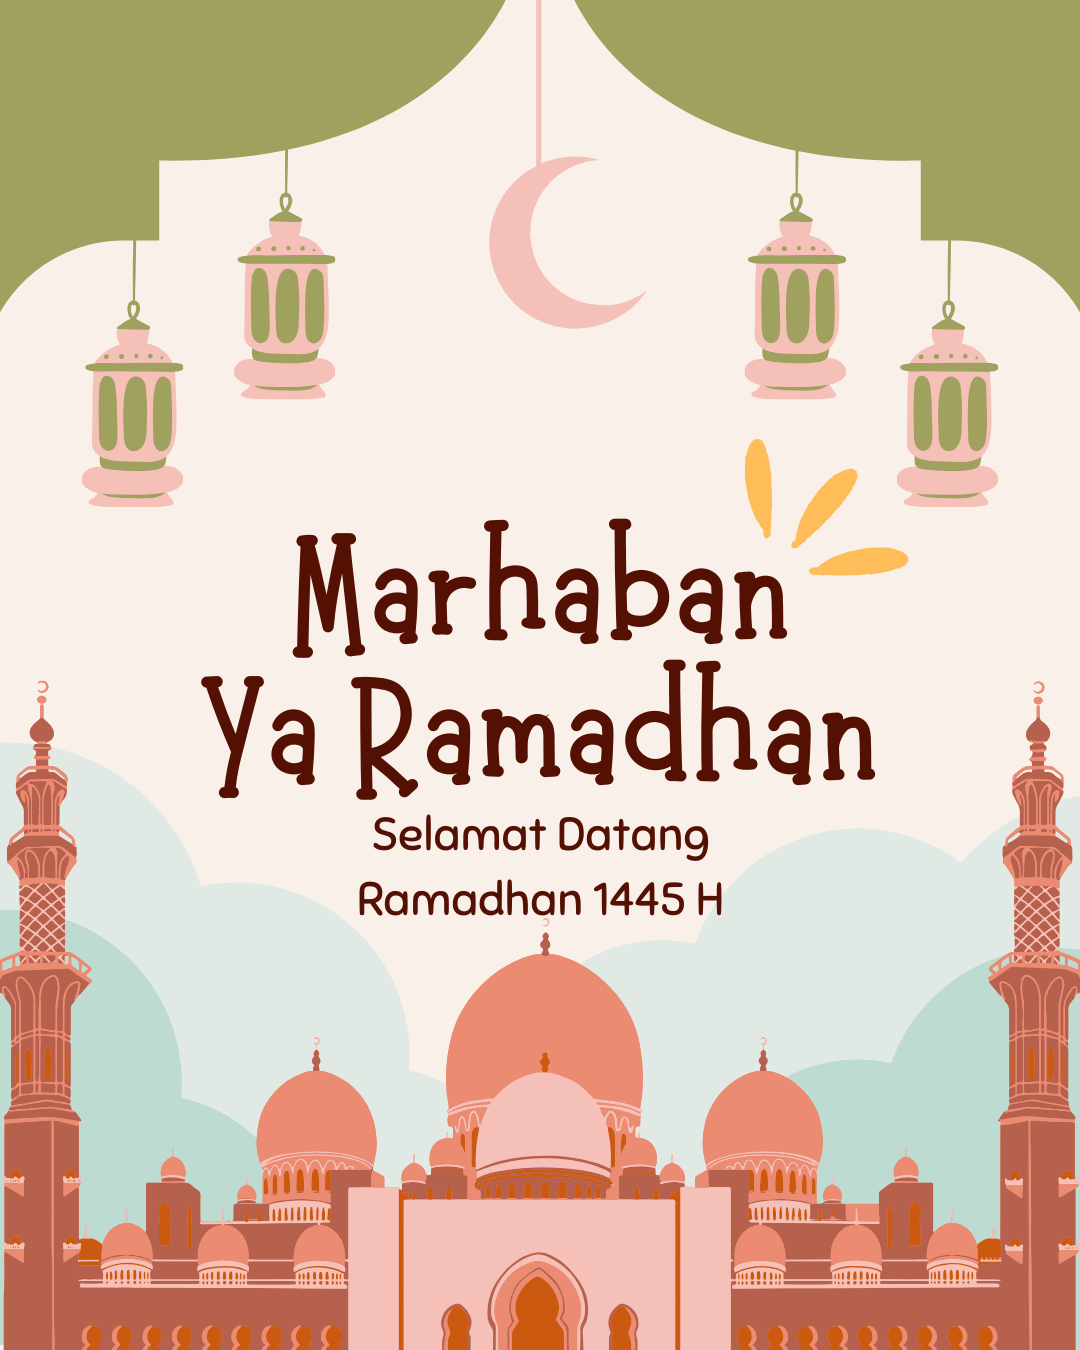 poster ramadhan anak TK dan SD 1445 H gambar masjid warna pink